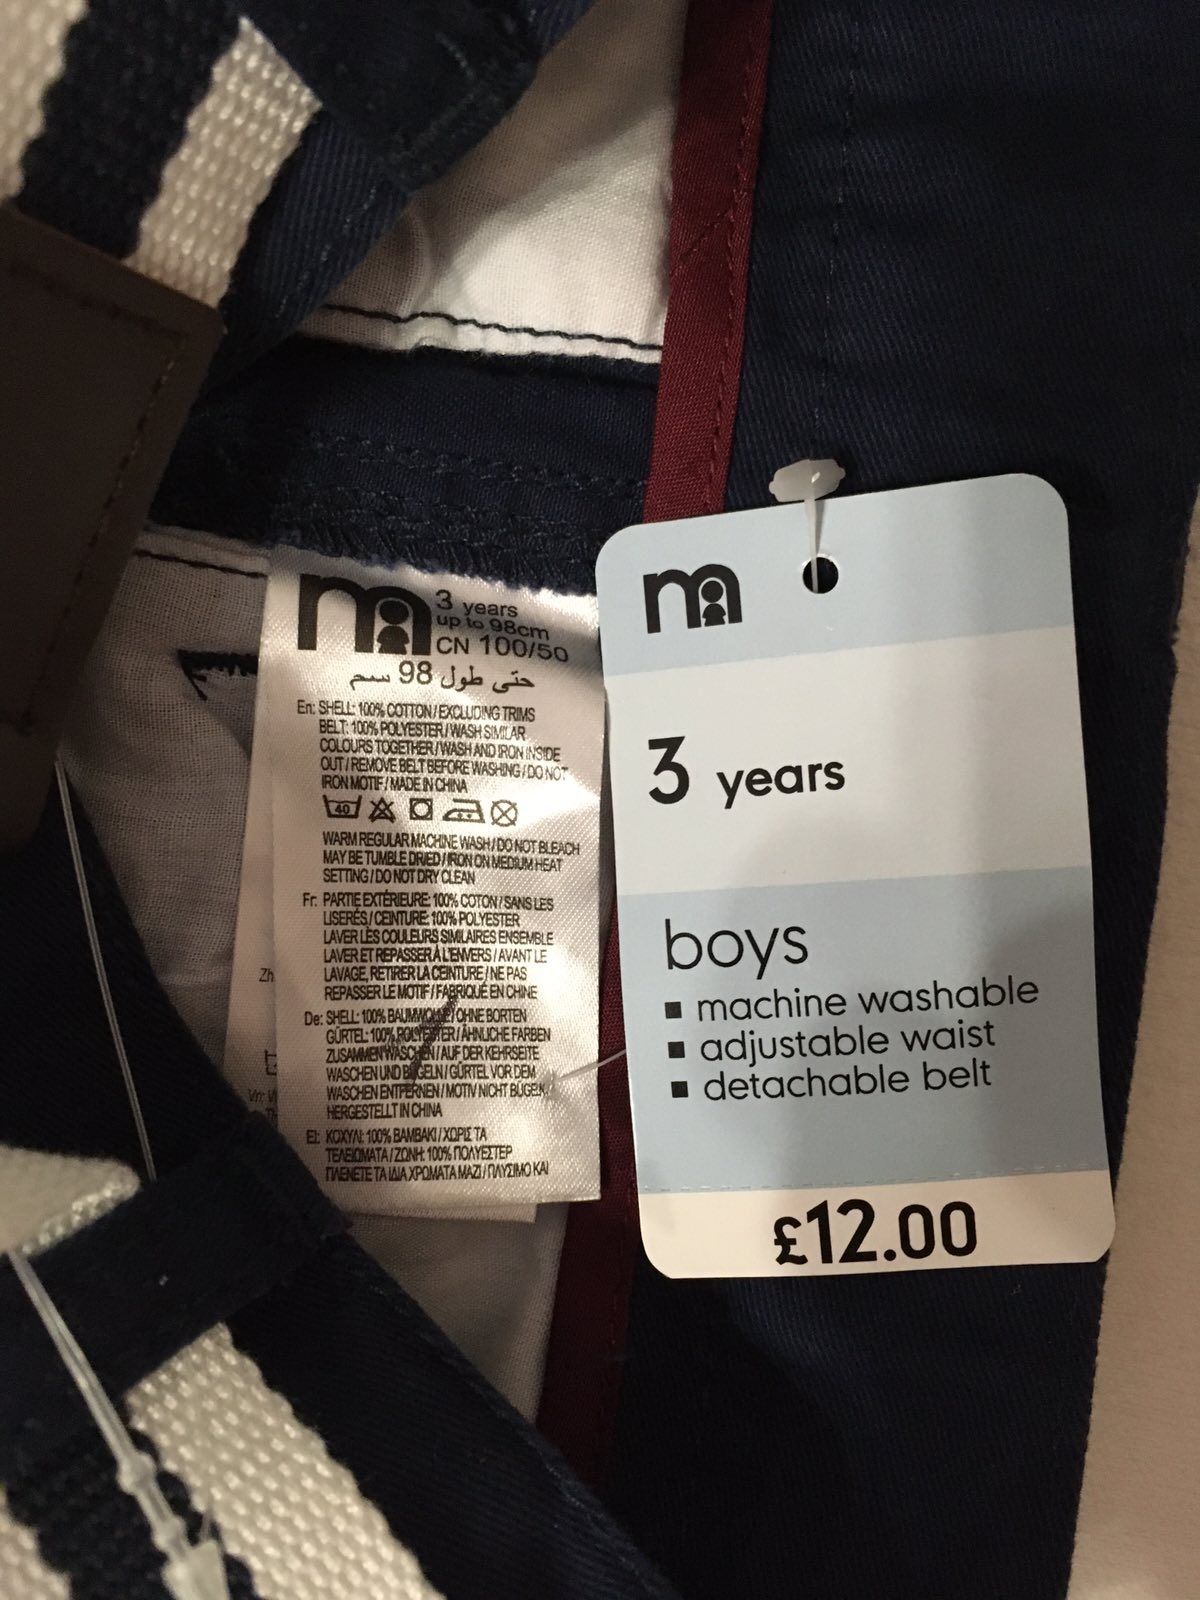 Брючки джинсы штанишки новые на мальчика 2 - 3 года gap mothercare